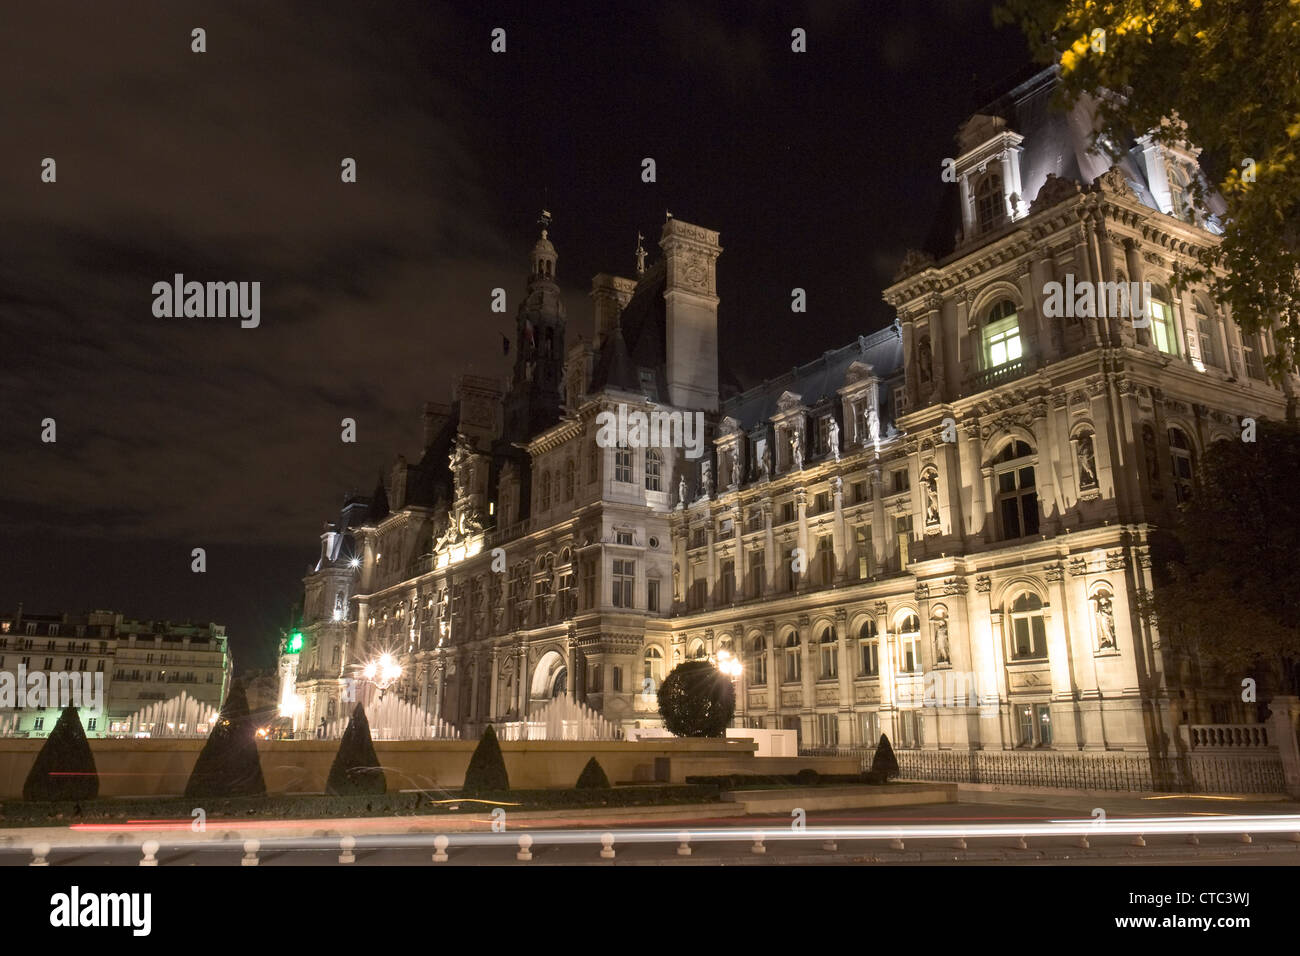 Hôtel de Ville, City Hall, Paris, France Stock Photo - Alamy